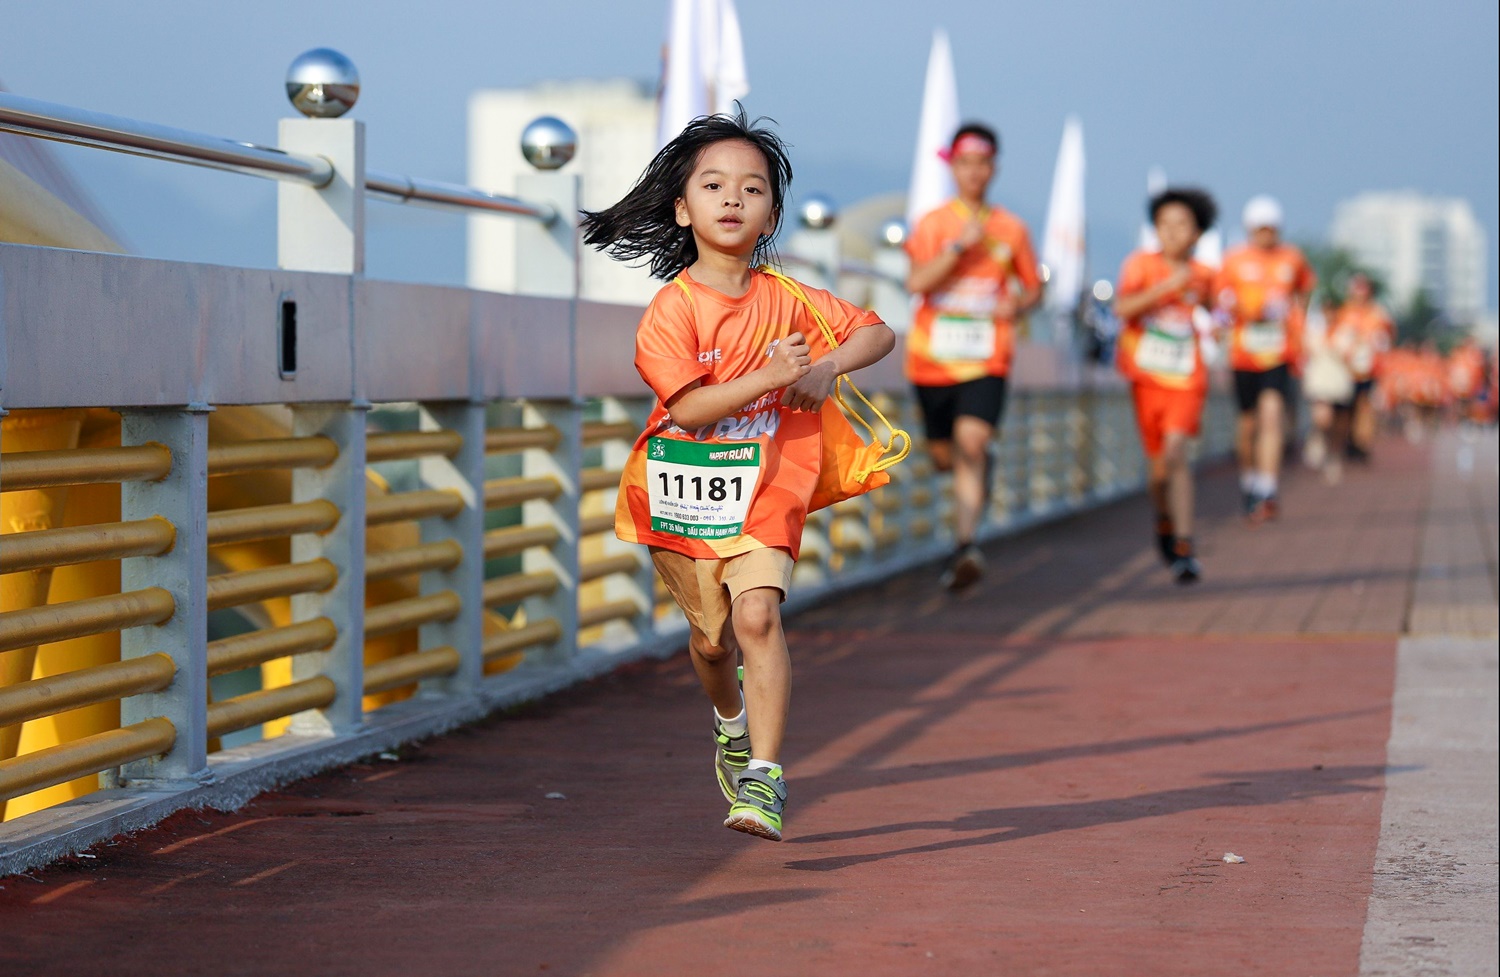 Hơn 3.500 người ở Đà Nẵng chạy gây quỹ cho học sinh khó khăn - Ảnh 6.